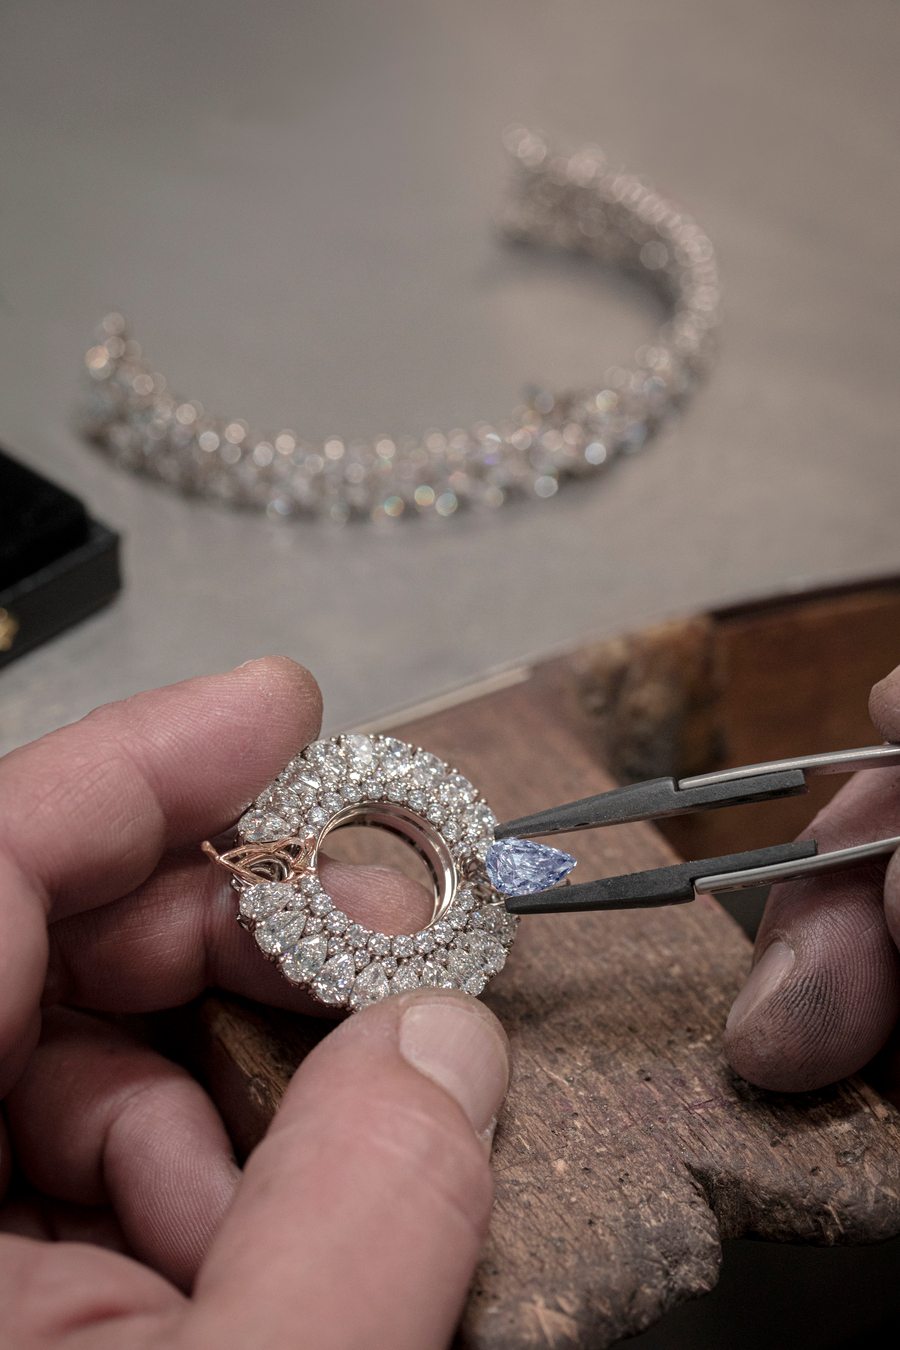 Chopard présente sa nouvelle montre-joaillière intégralement pavée de diamants